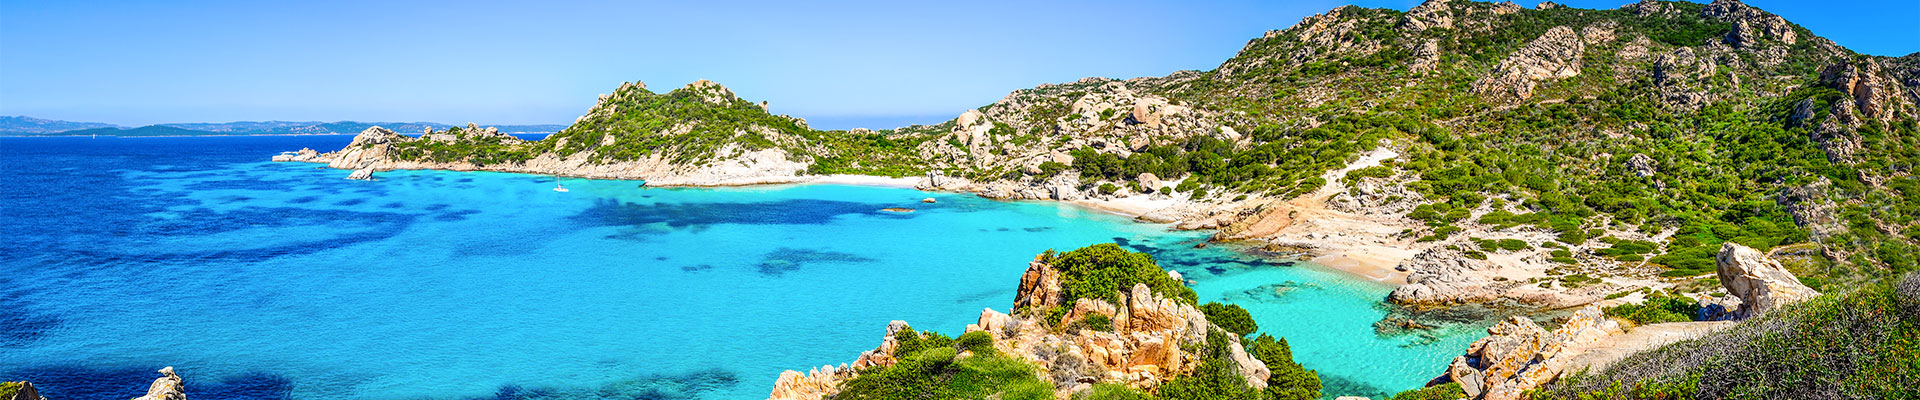 Prenota la tua vacanza in Sardegna con gli amici o la famiglia. Scopri lla selezione di offerte di Vantaggi Travel, prezzi sempre imbattibili.